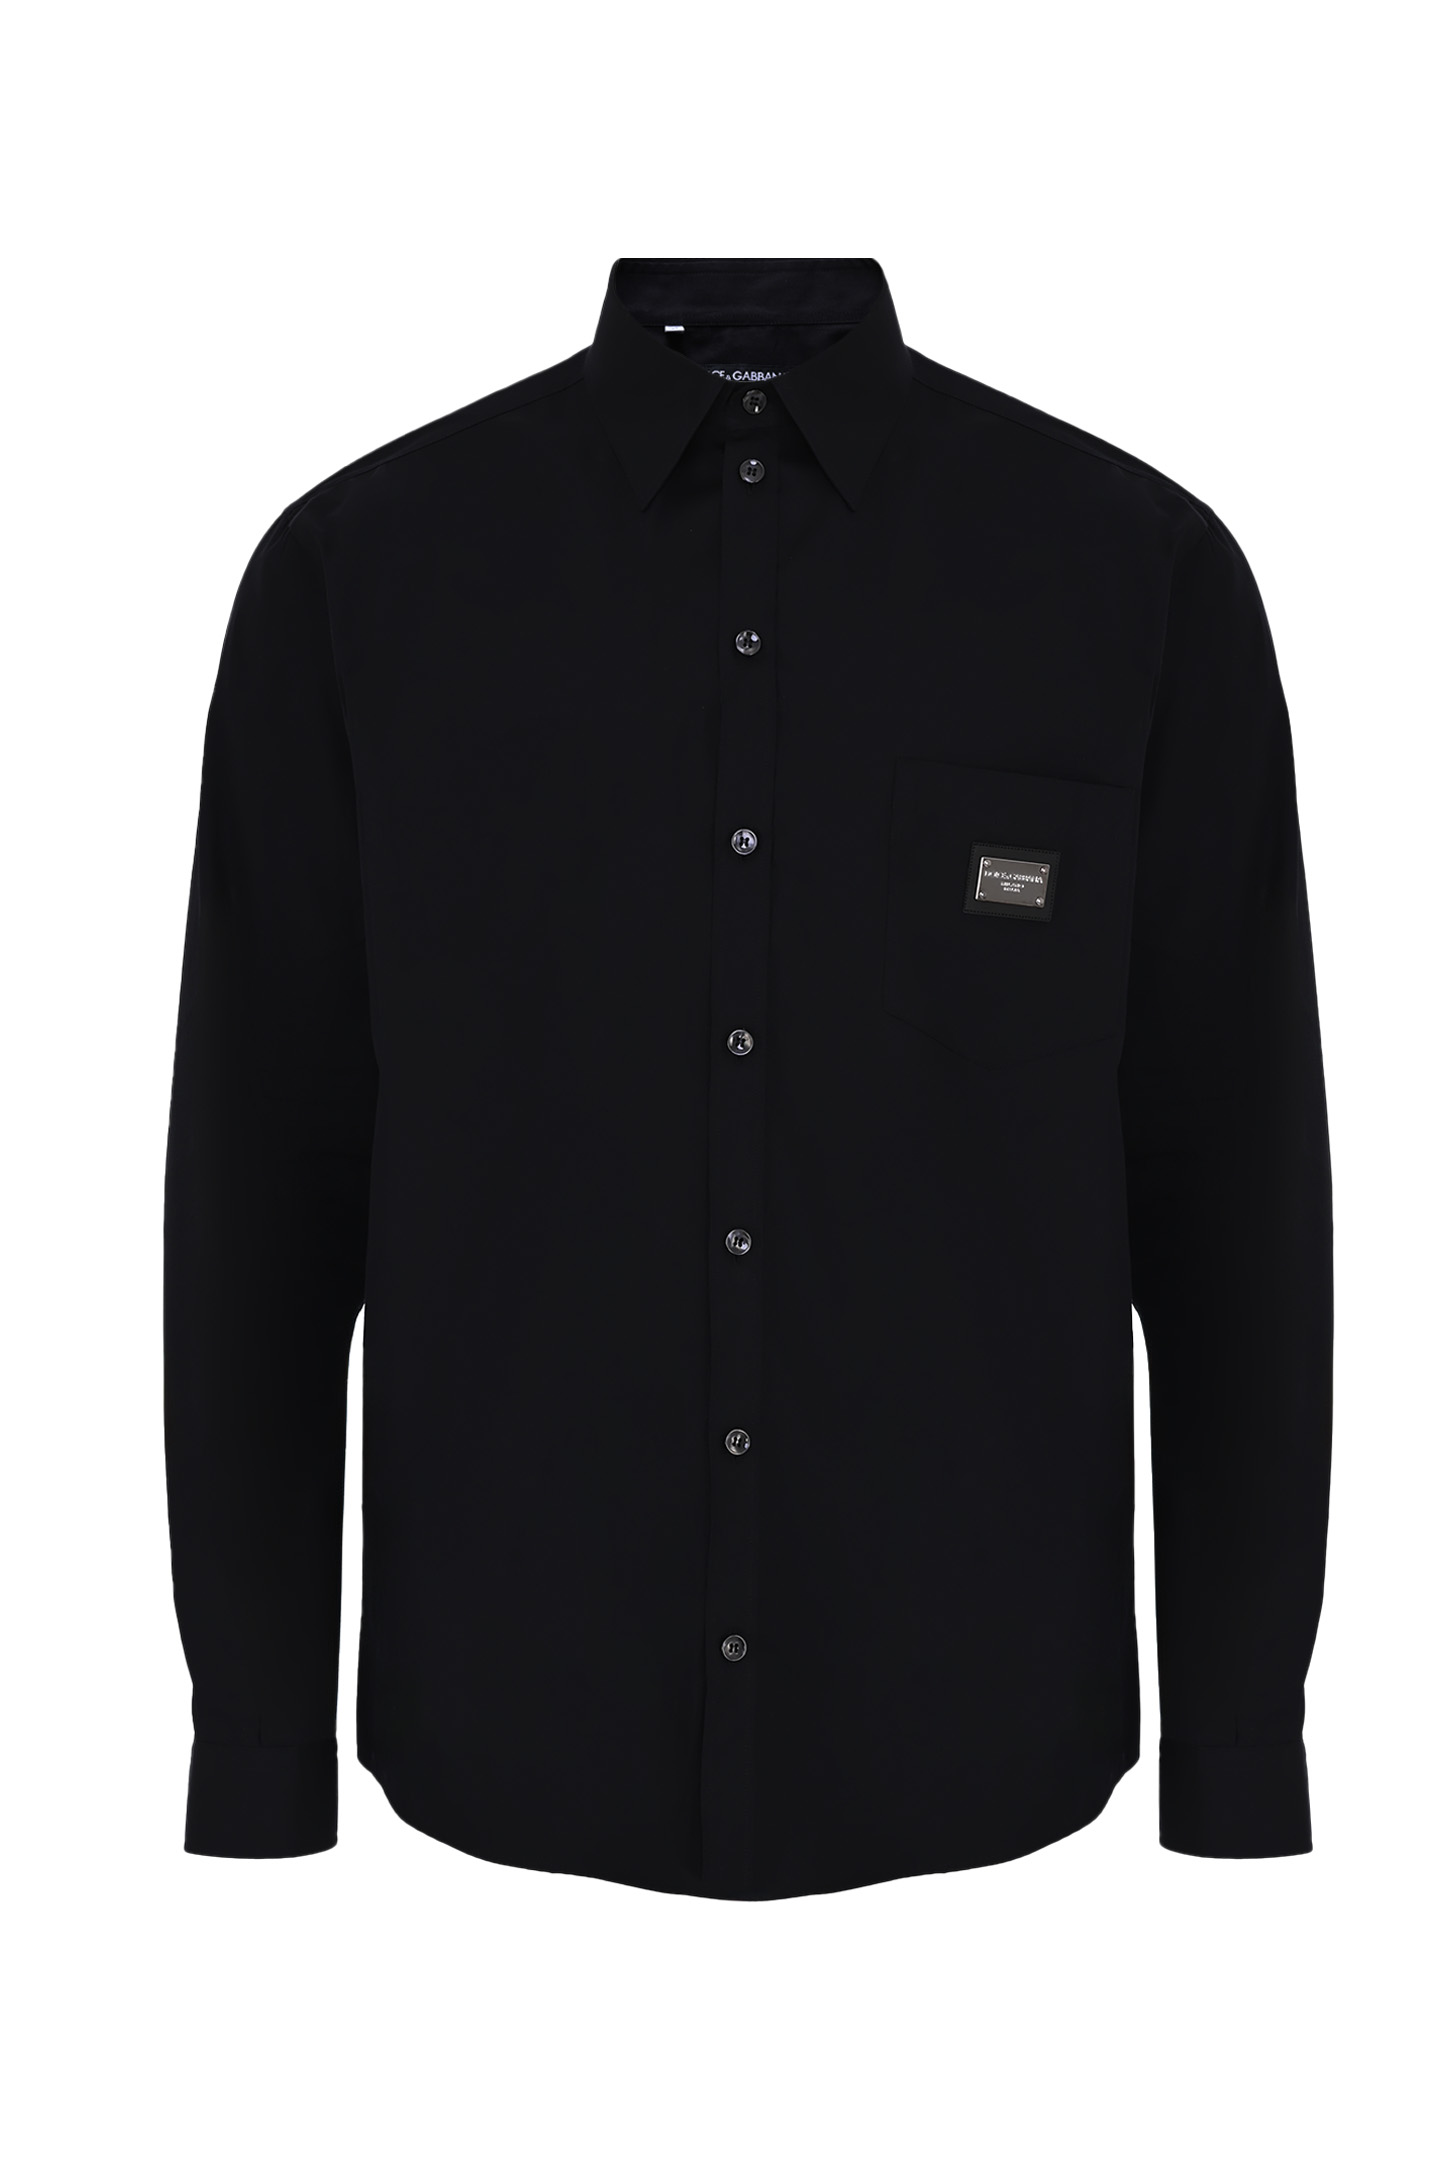 Рубашка DOLCE & GABBANA G5JG4T FU5U8, цвет: Черный, Мужской